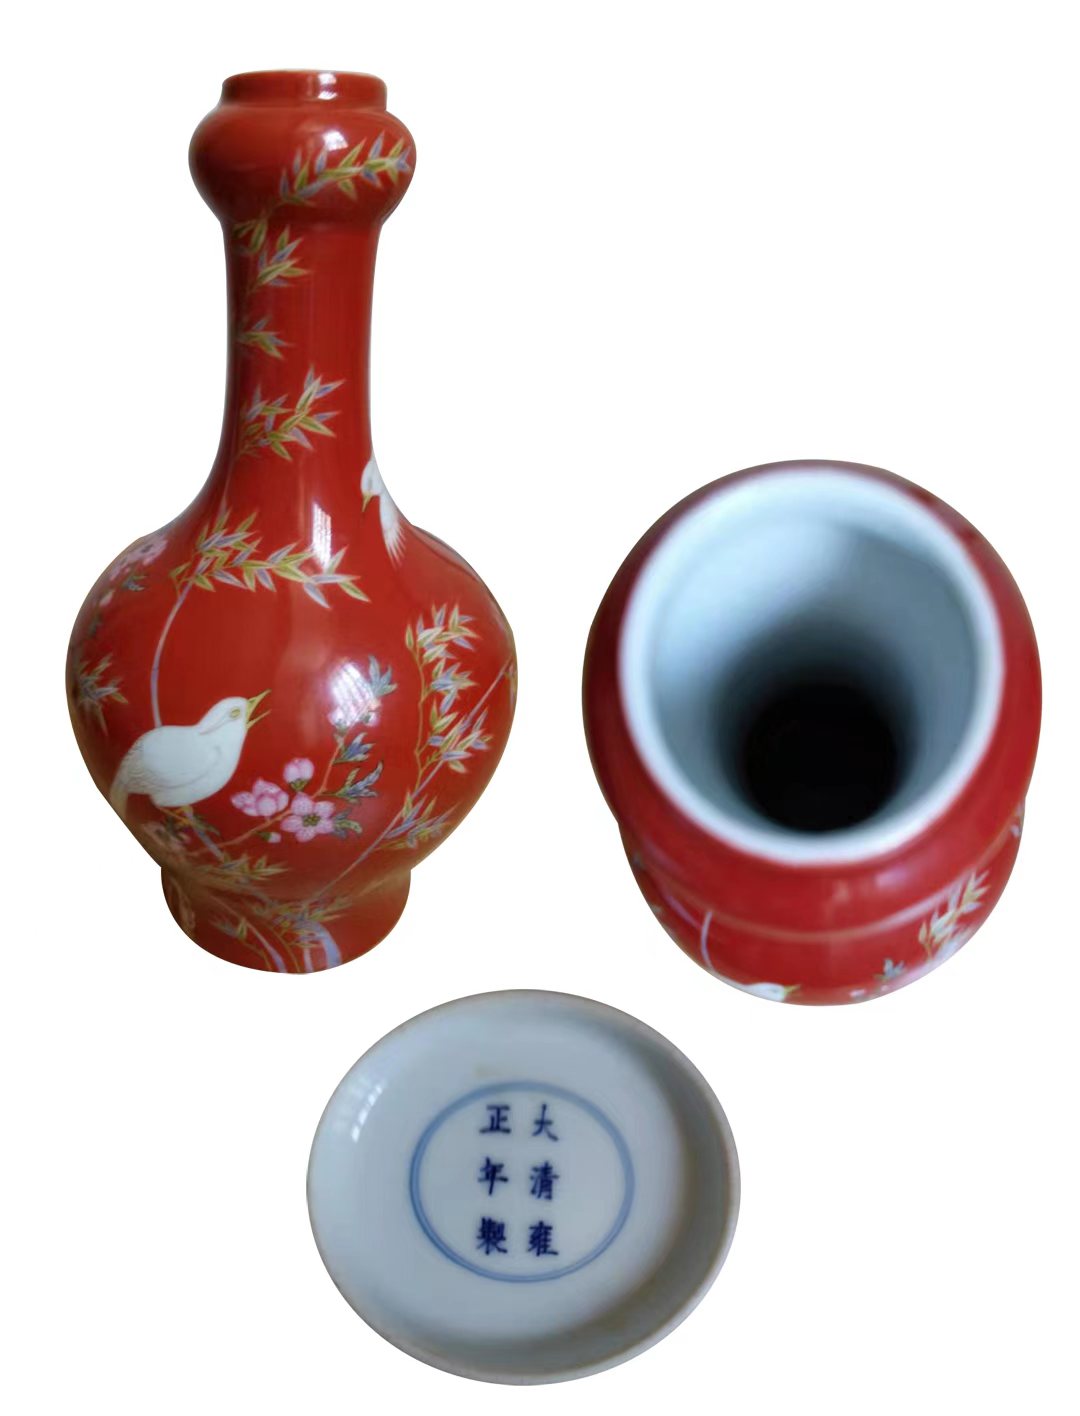 大清雍正年制珊瑚红釉珐琅彩画花鸟蒜头瓶